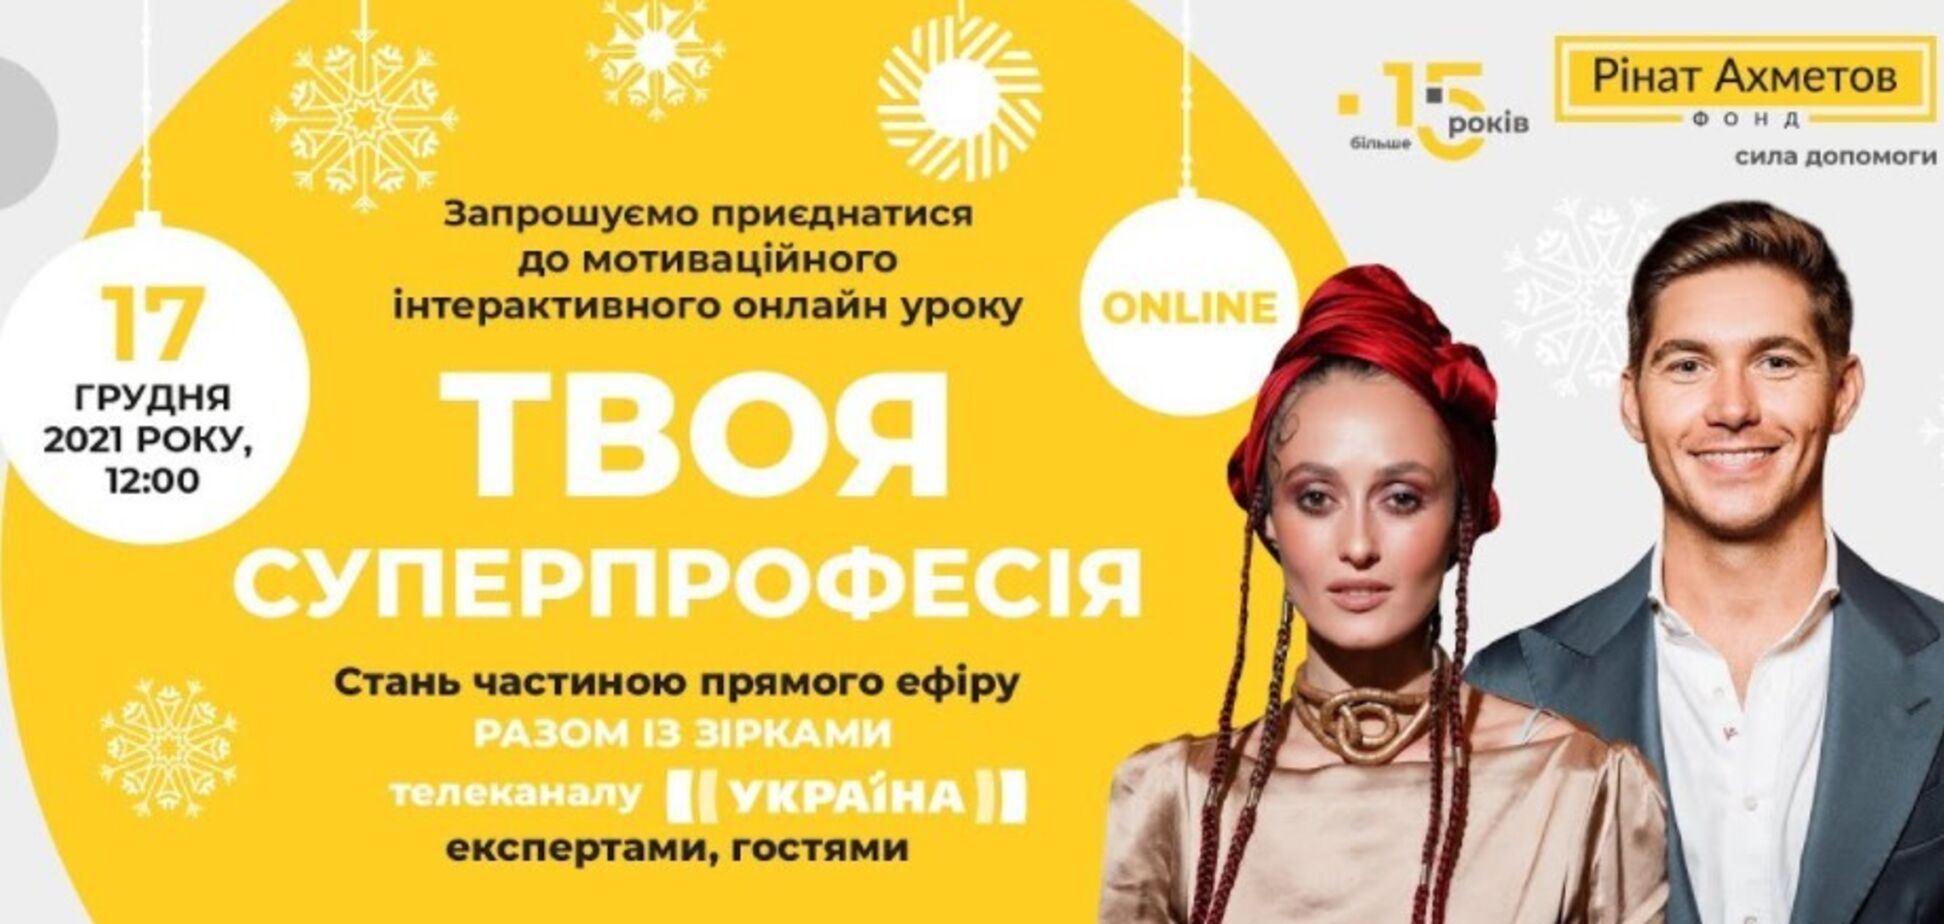 Фонд Ріната Ахметова проведе всеукраїнський інтерактивний онлайн-урок 'Твоя суперпрофесія'